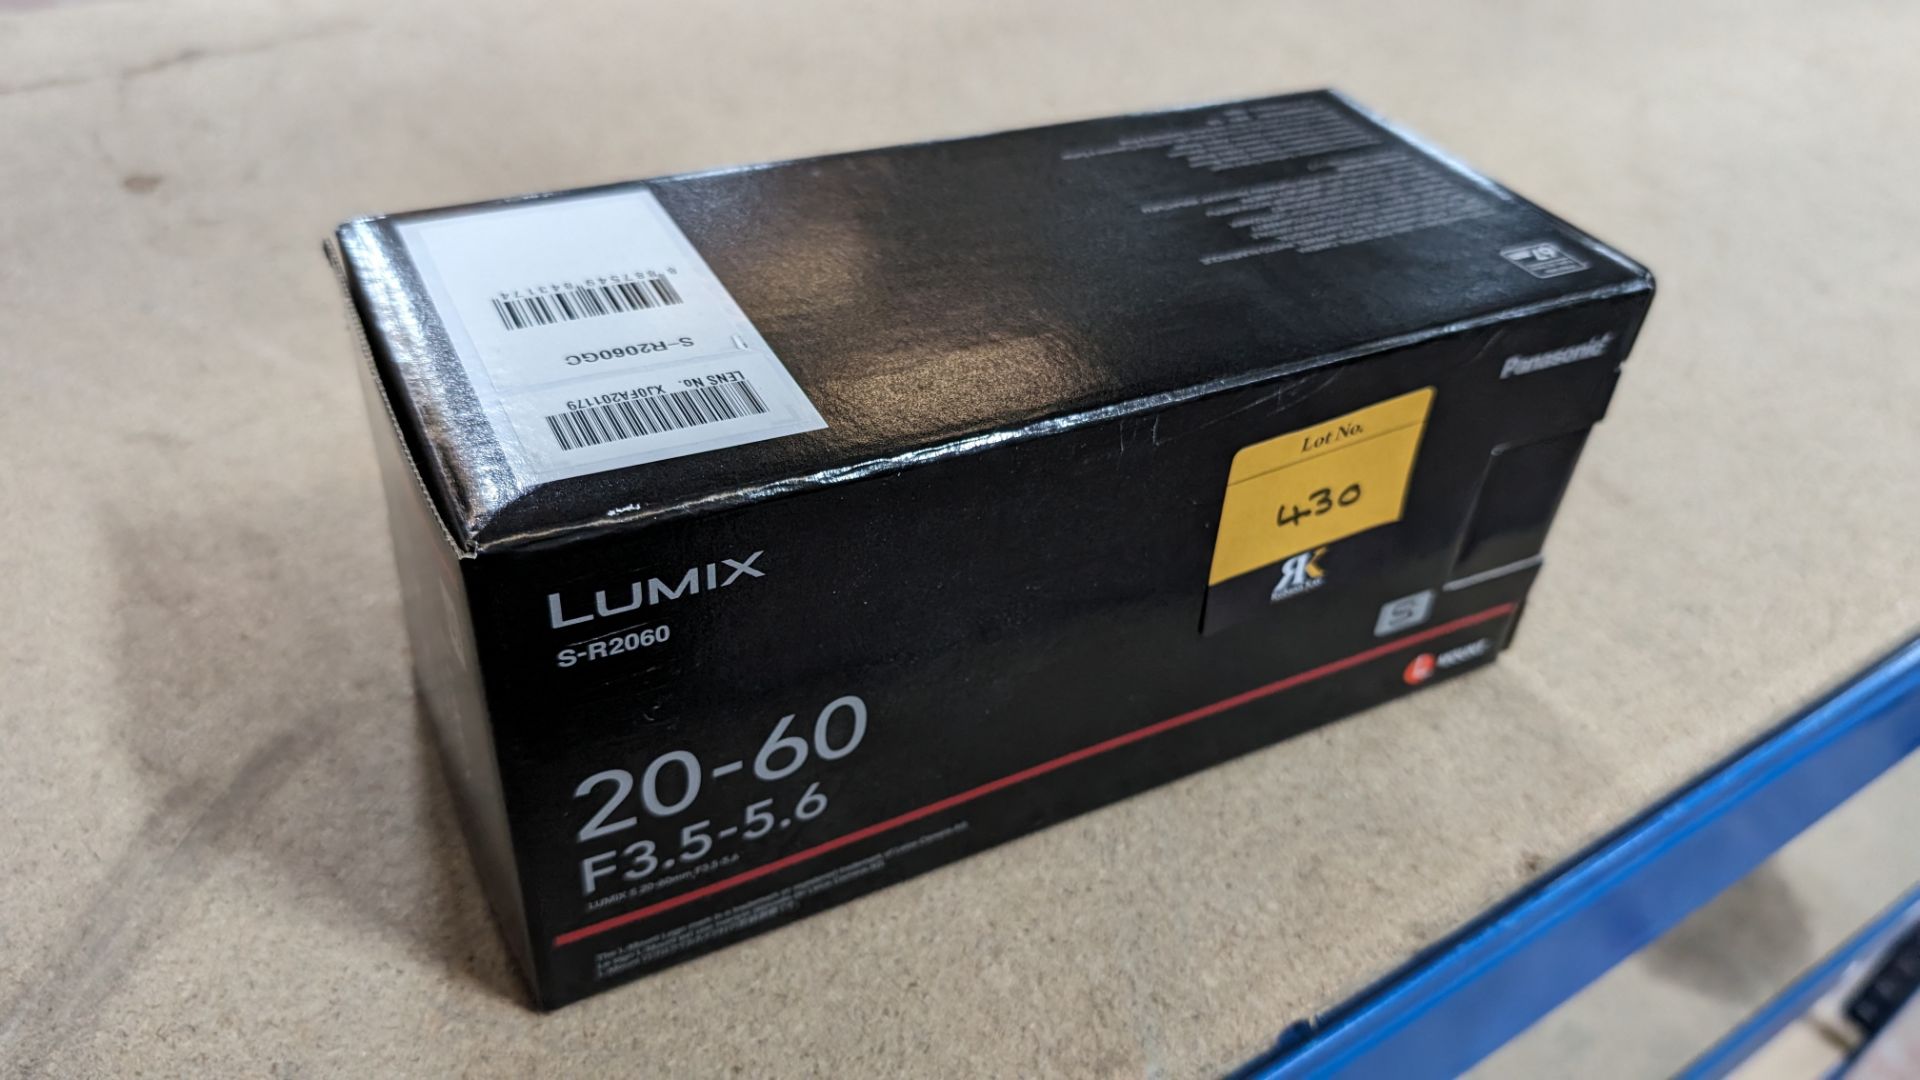 Panasonic Lumix model S-R2060 lens, 20-60mm, f3.5-5.6